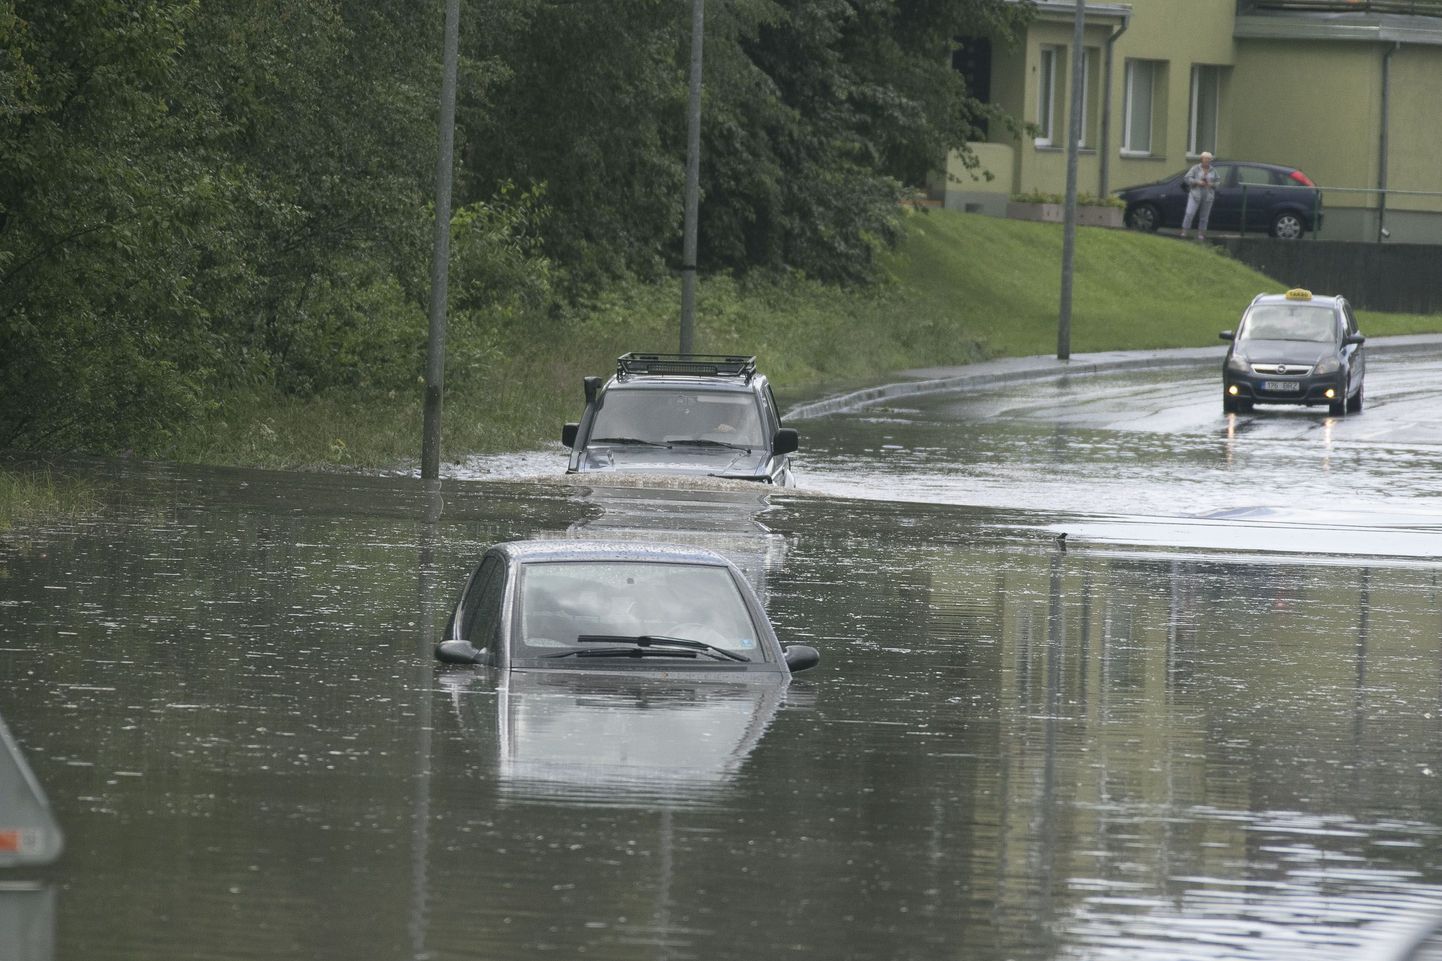 Дождь преподнес большой урок Таллинну. Автовладельцам придется еще долго разбираться с последствиями потопа.